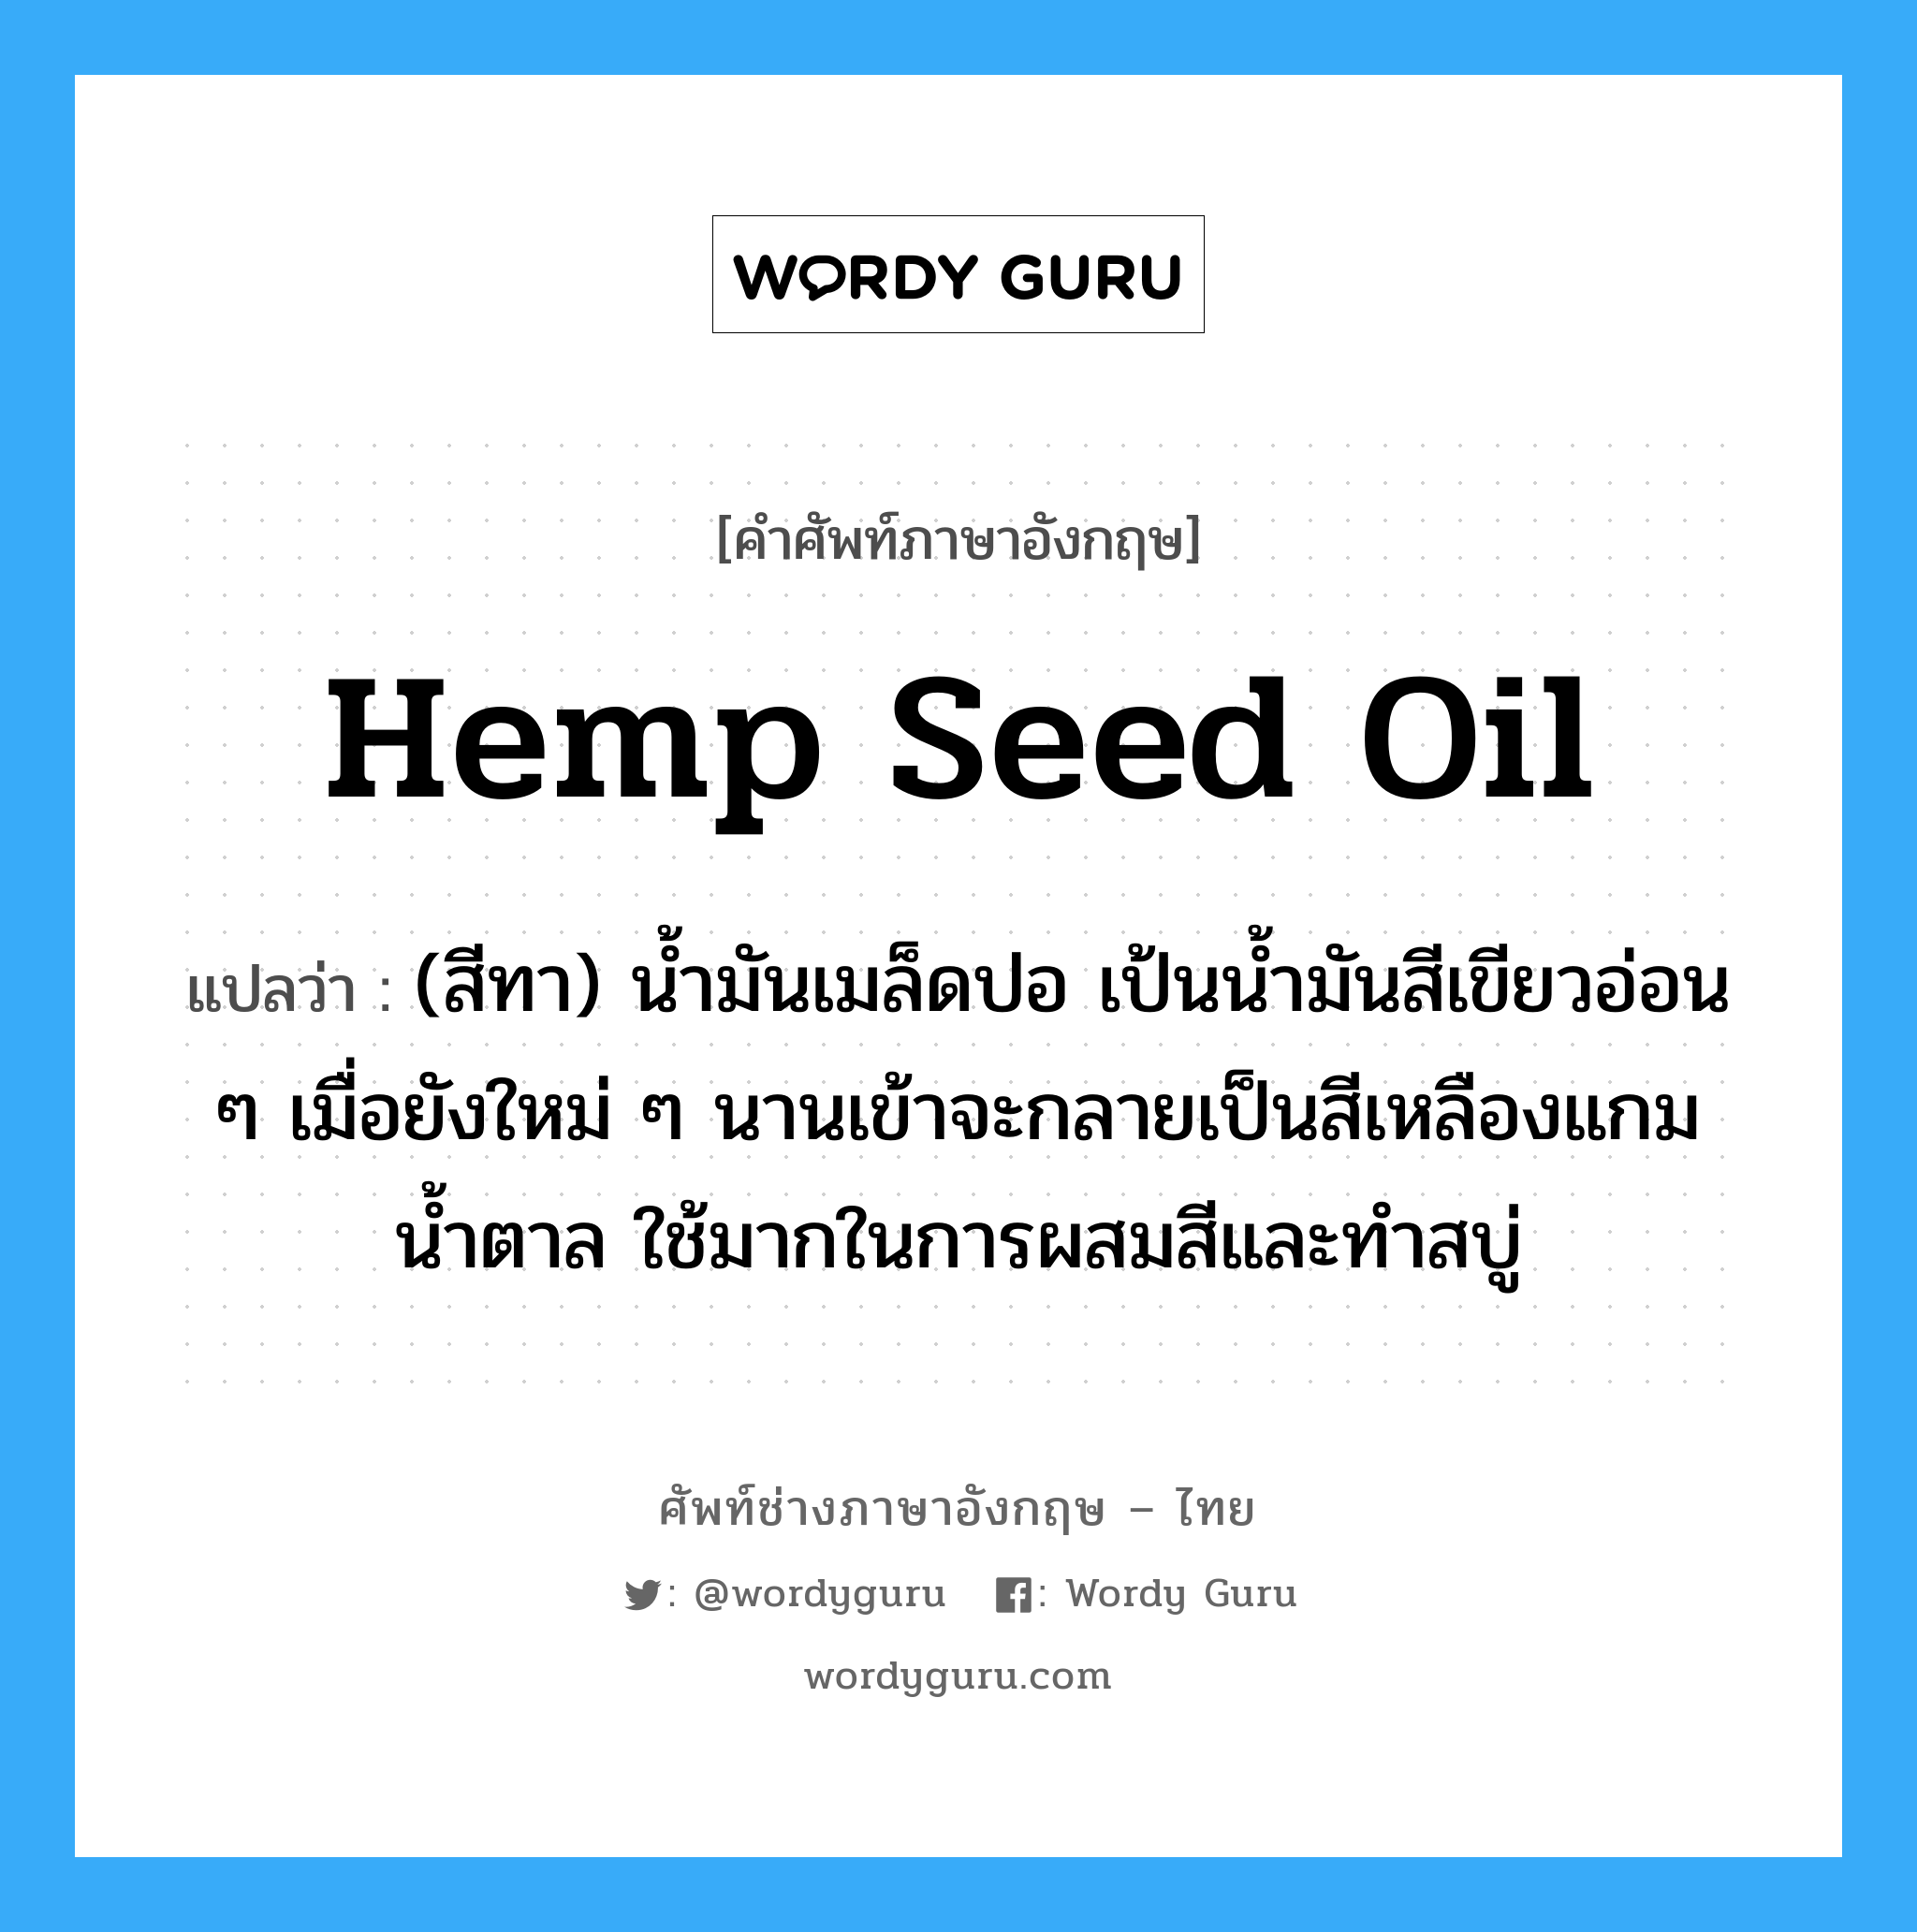 hemp seed oil แปลว่า?, คำศัพท์ช่างภาษาอังกฤษ - ไทย hemp seed oil คำศัพท์ภาษาอังกฤษ hemp seed oil แปลว่า (สีทา) น้ำมันเมล็ดปอ เป้นน้ำมันสีเขียวอ่อน ๆ เมื่อยังใหม่ ๆ นานเข้าจะกลายเป็นสีเหลืองแกมน้ำตาล ใช้มากในการผสมสีและทำสบู่